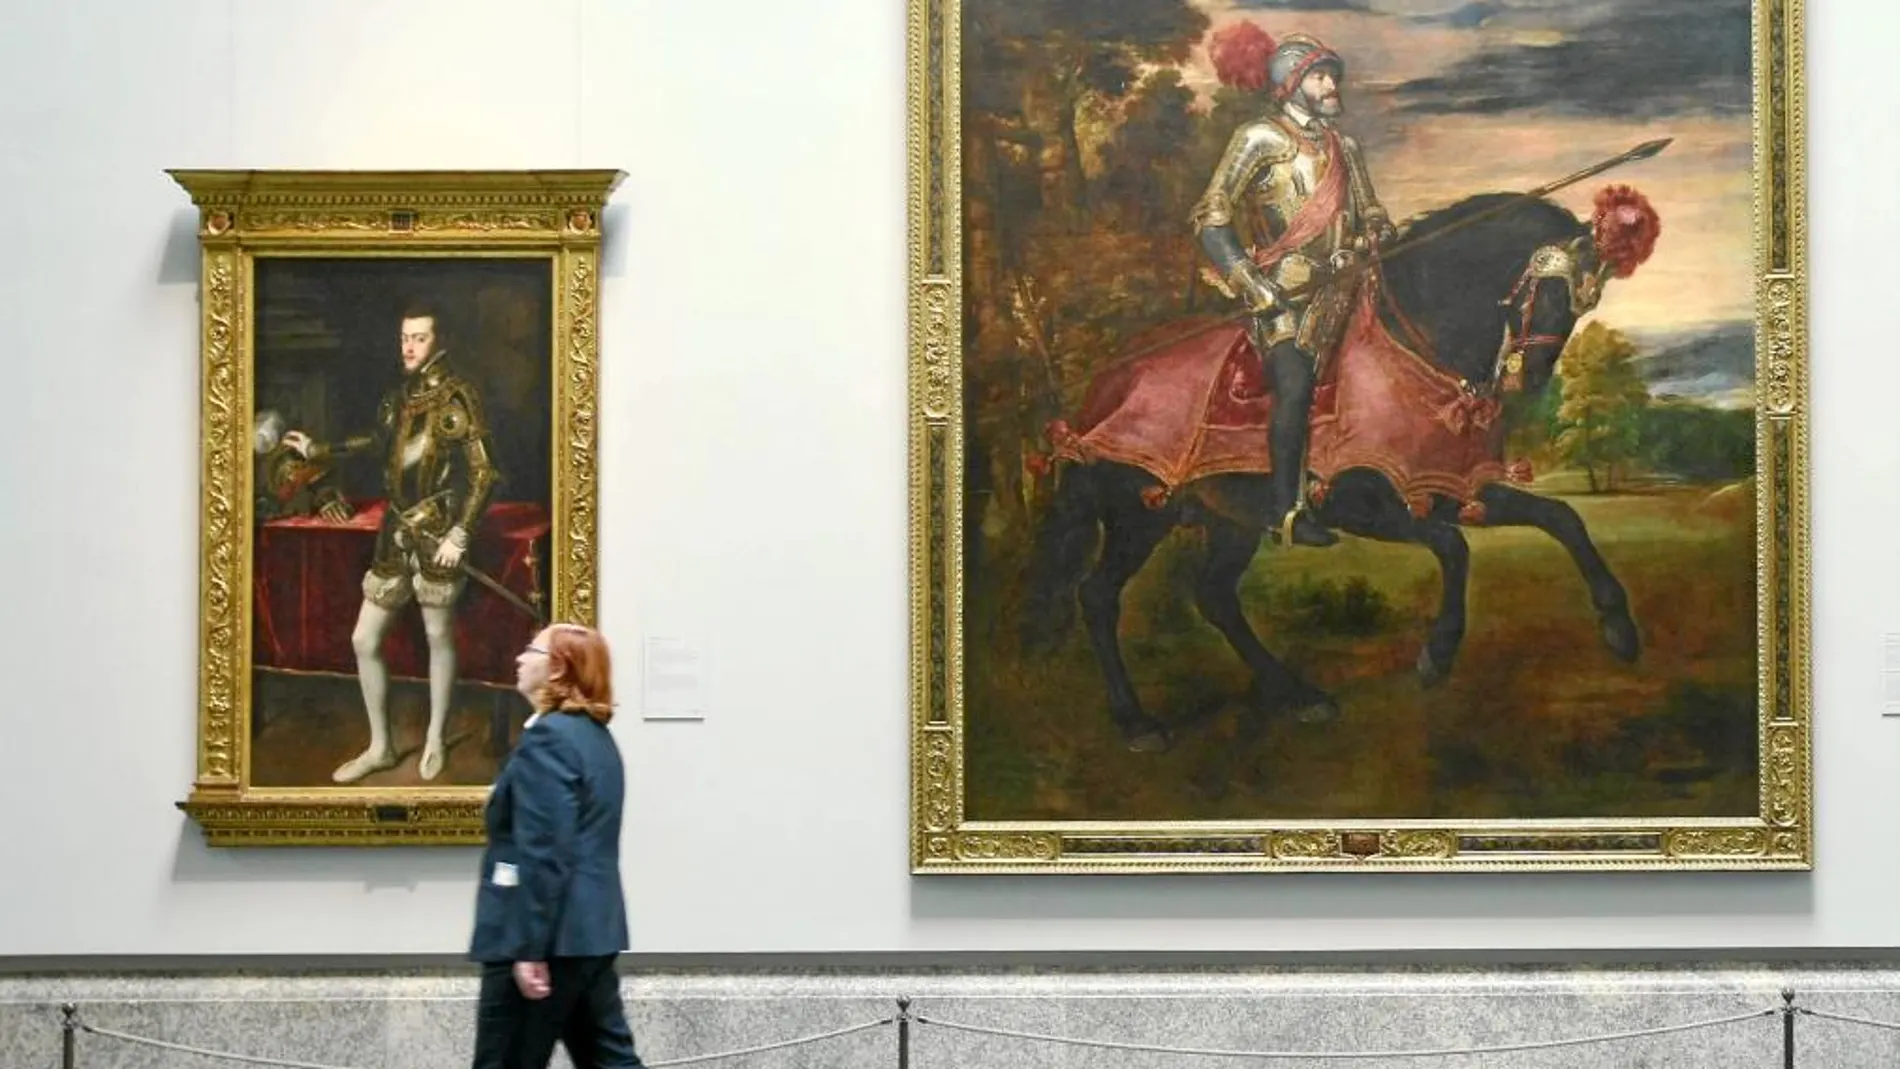 El retrato de Carlos V a caballo en la batalla de Mülhberg convive en el Museo del Prado junto al de su hijo, Felipe II, realizado cuando todavía era príncipe, como si de una línea sucesoria se tratase. Ambos retratos corresponden a Tiziano.